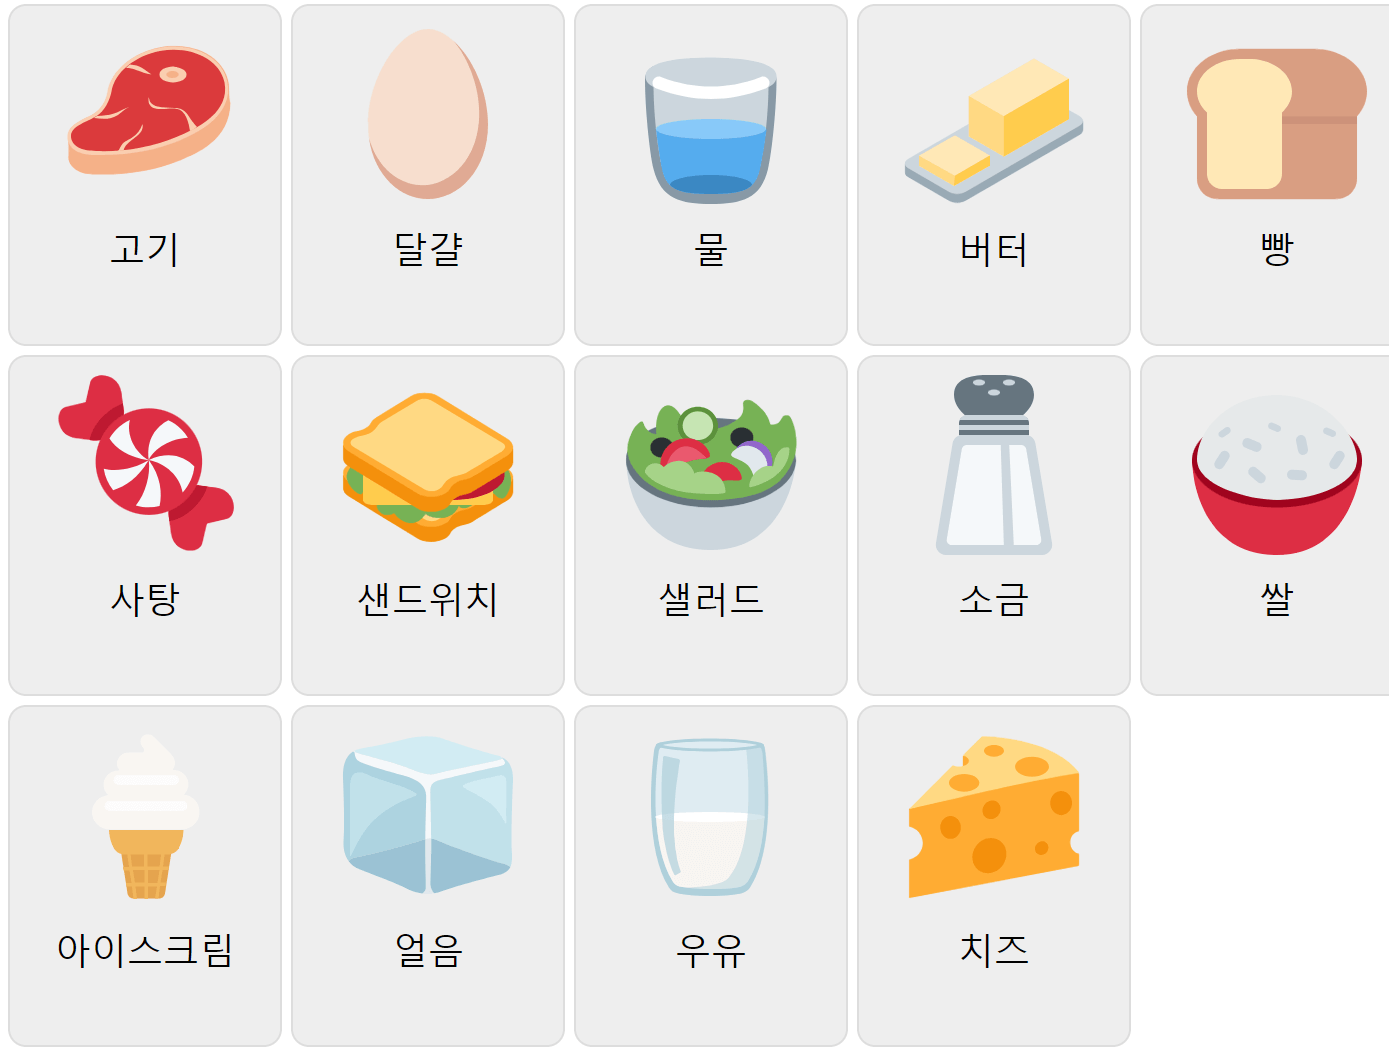 Їжа на корейській мові 1